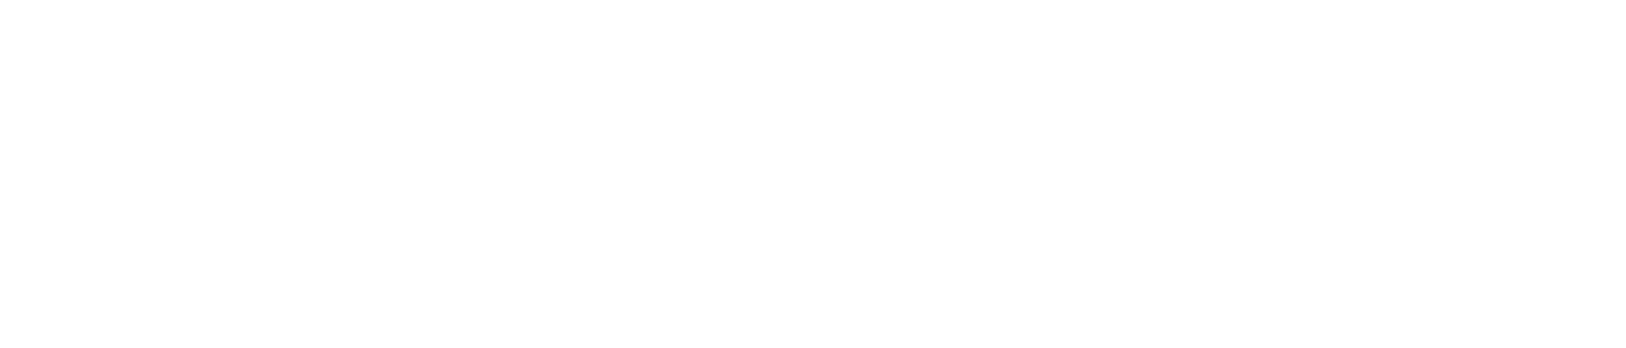 Matt Five,Marketing management,International PR